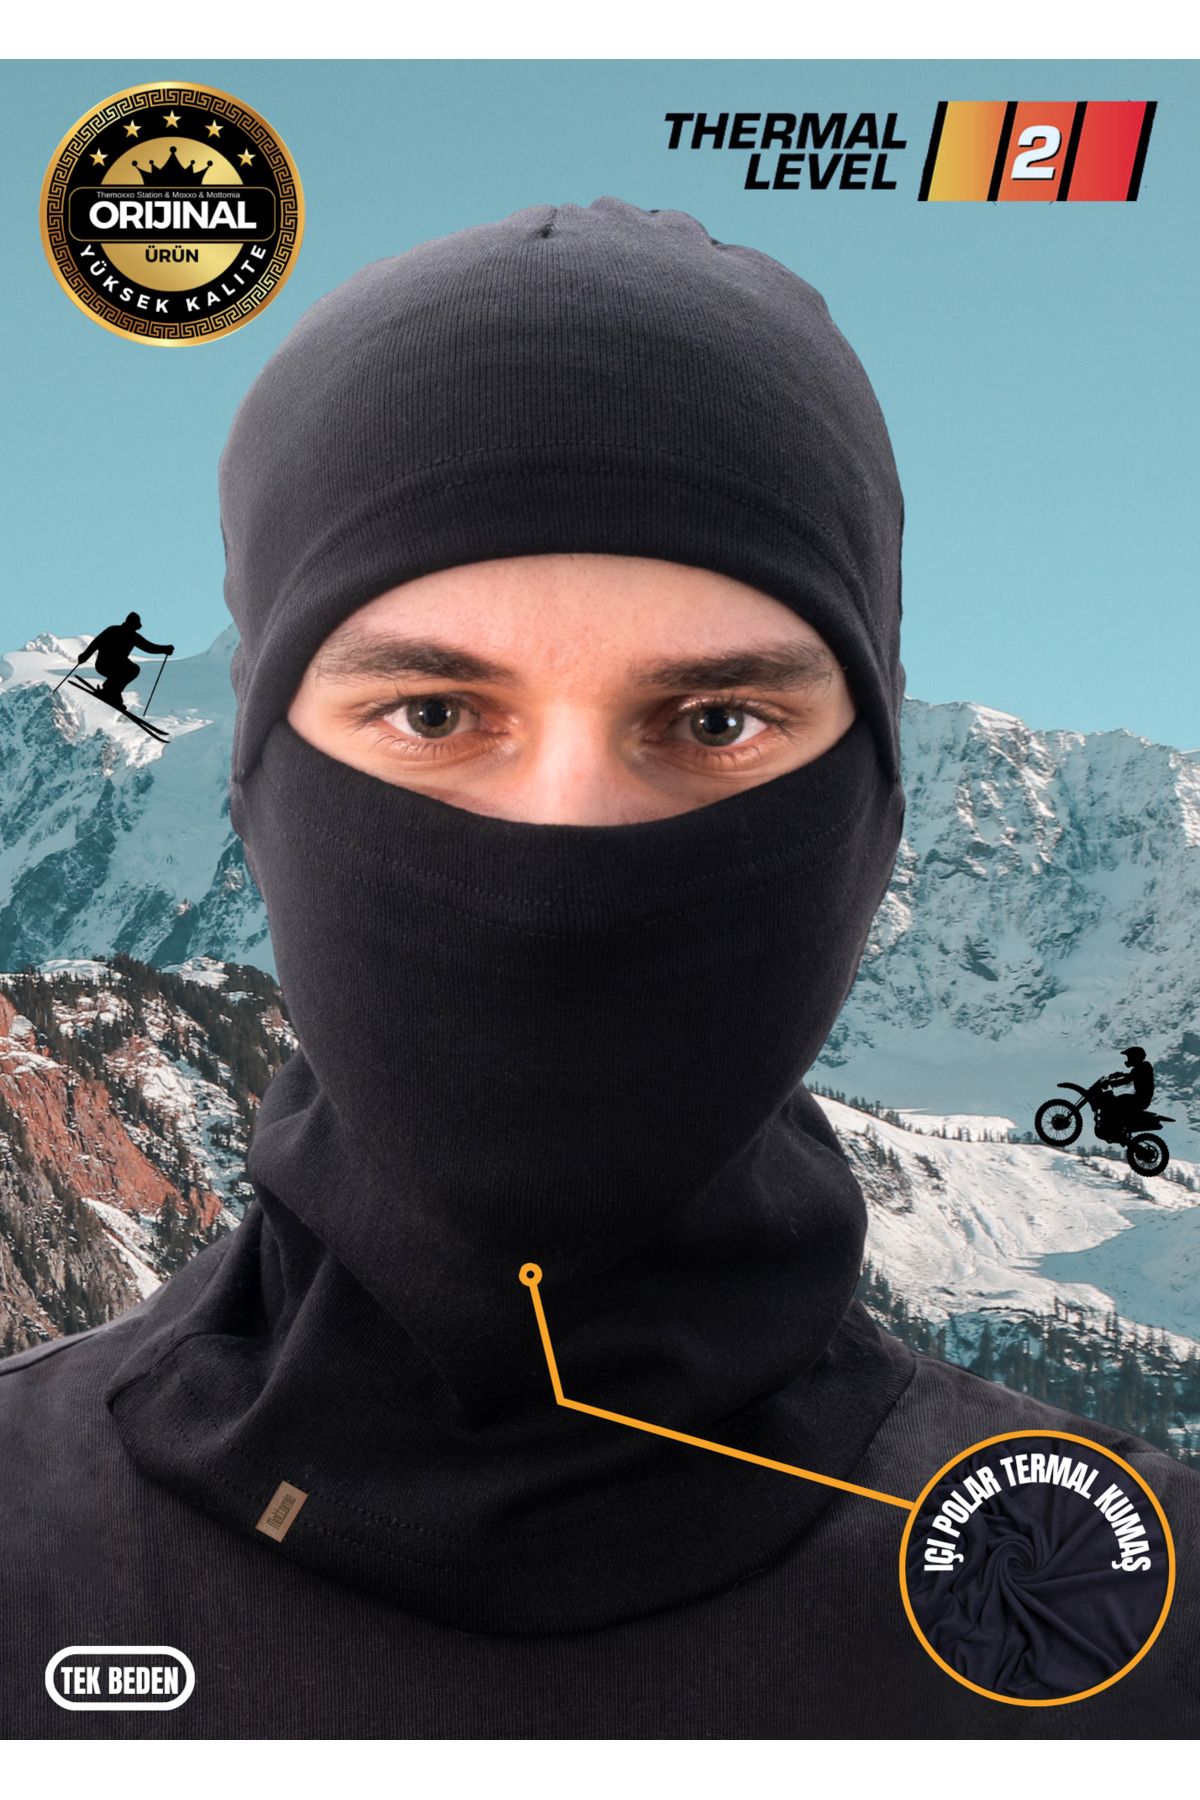 mottomia Motorcu Kayakçılar Ve Kuryeler Için Outdoor Termal Kar Maskesi, Motor Kaskı Içi Beresi (LEVEL 2)